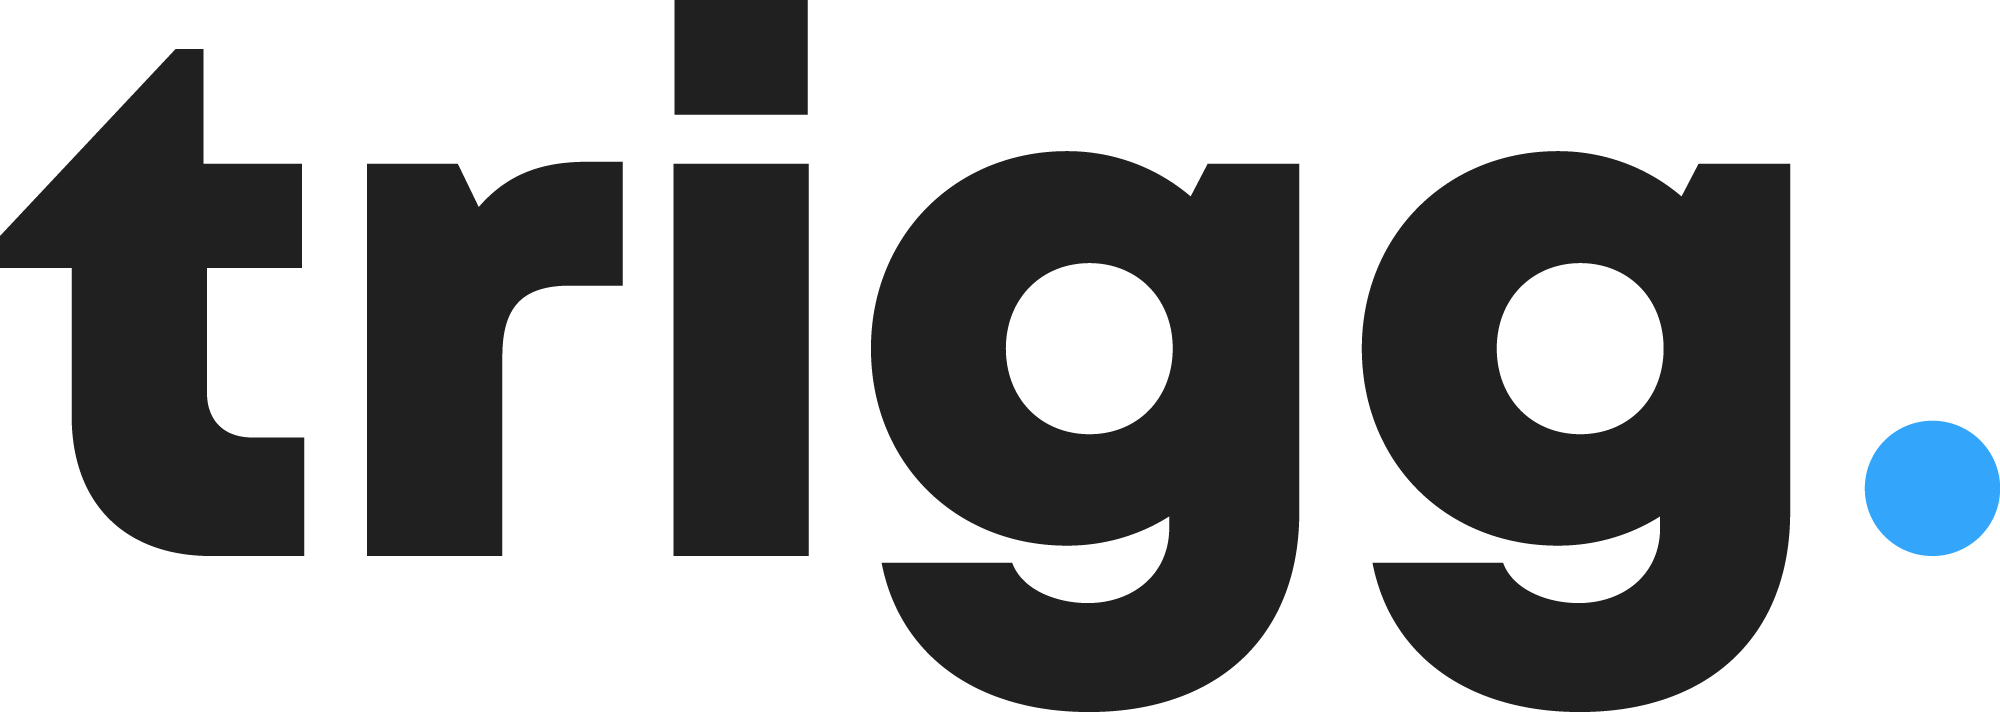 Trigg Digital Logo